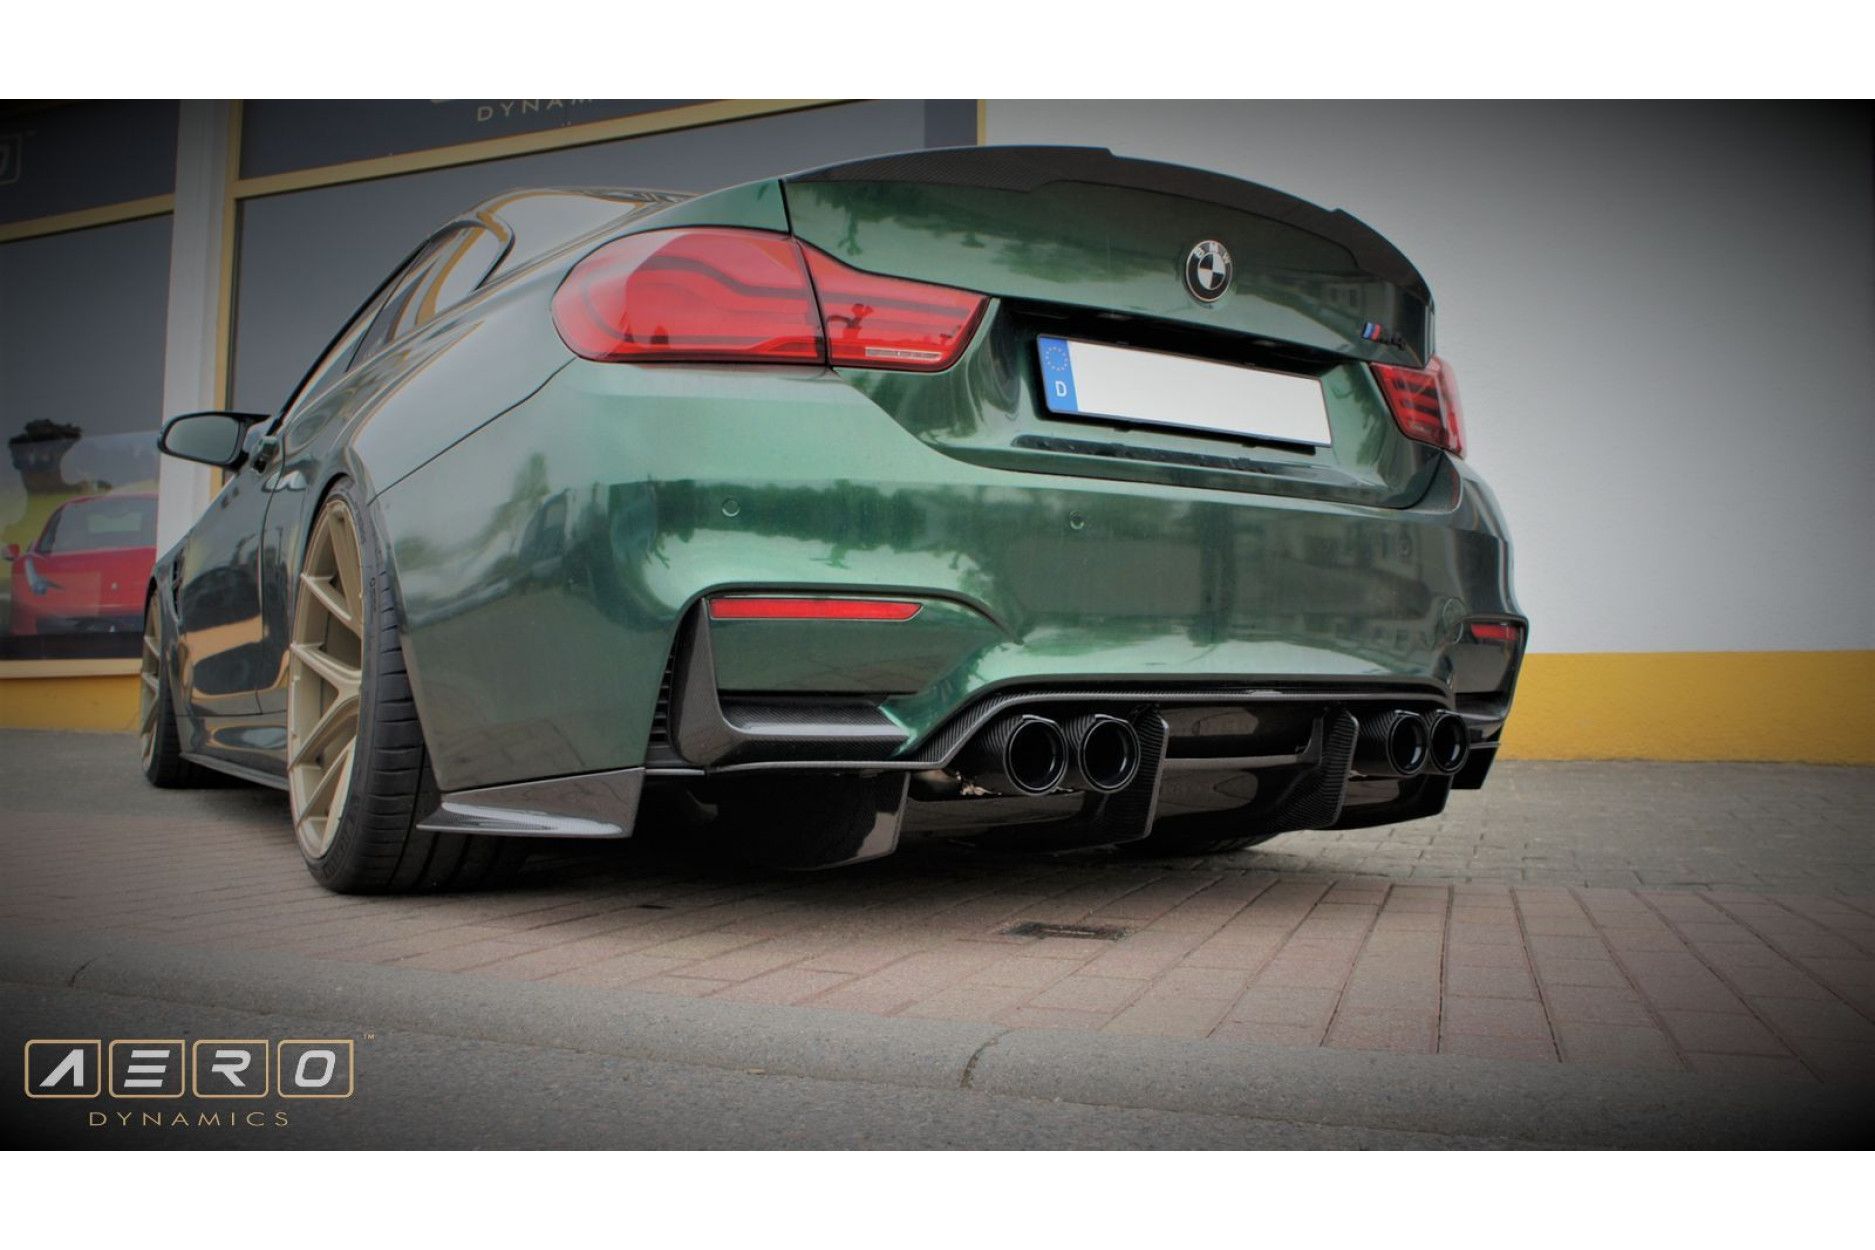 Diffuseur AERO Dynamics pour BMW Série 3 | Série 4 F80 | F82 M3 | M4 Style DTM 